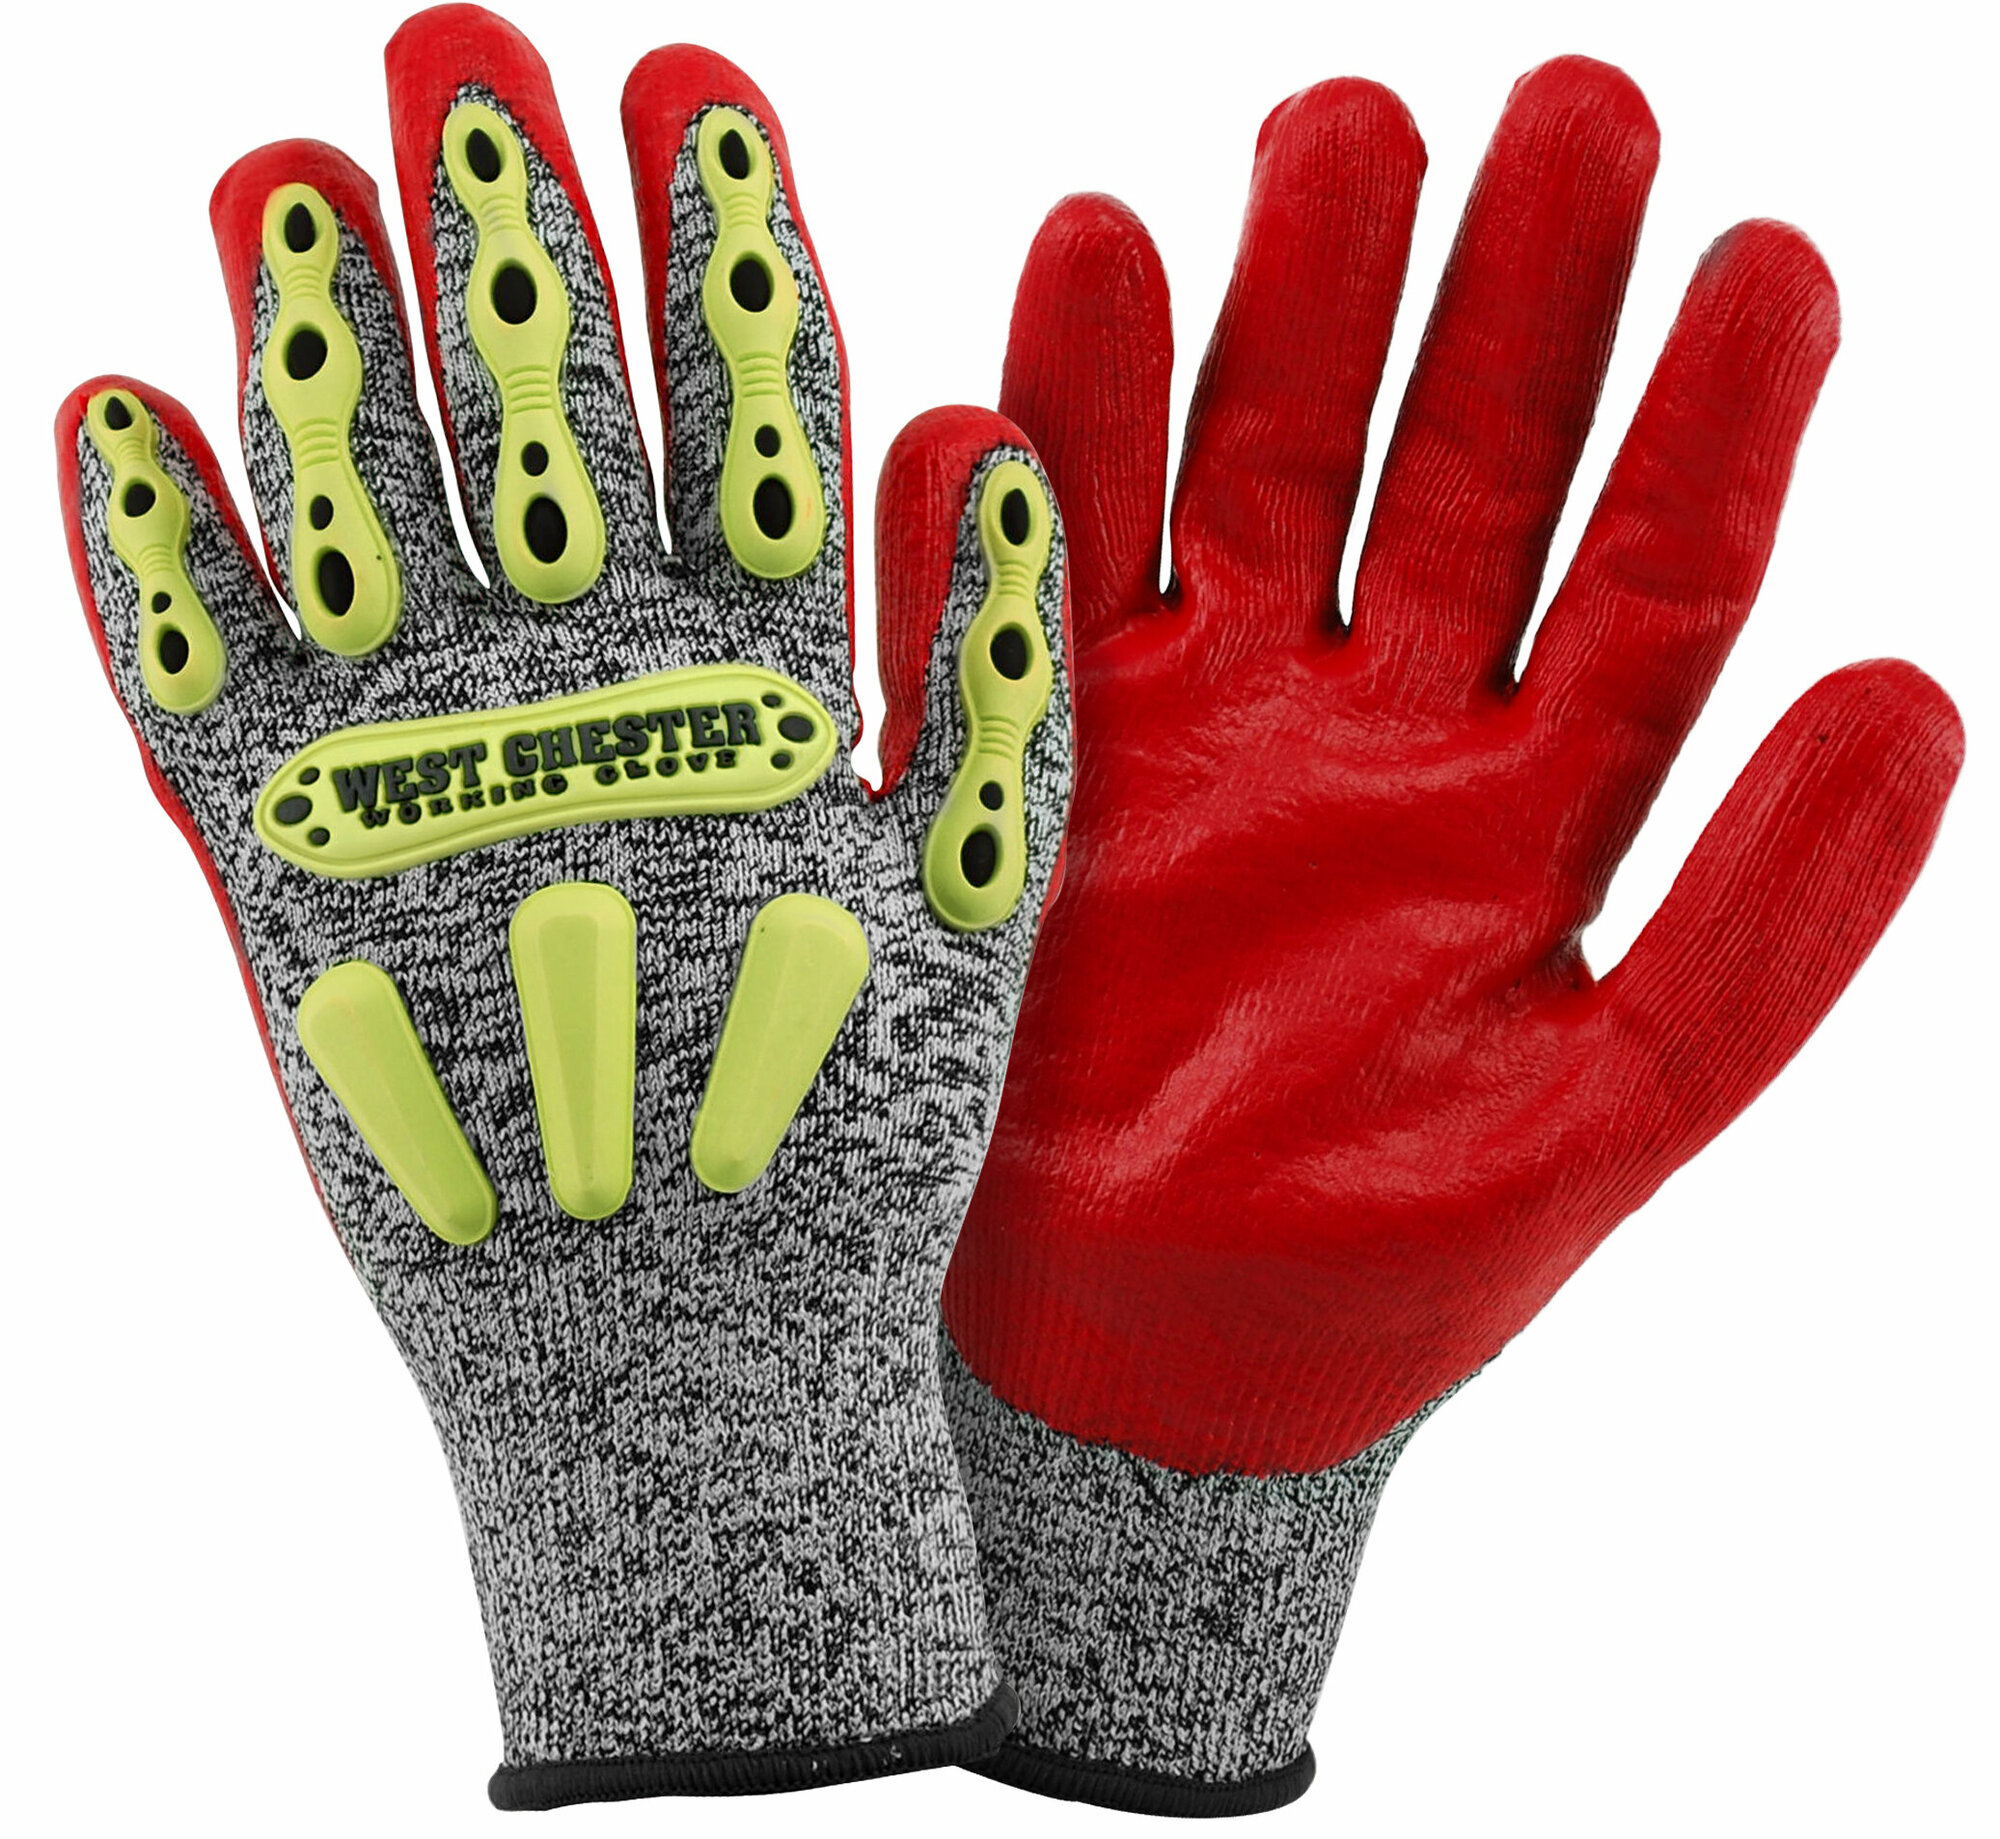 Перчатки для защиты рук от порезов "Защита рук"